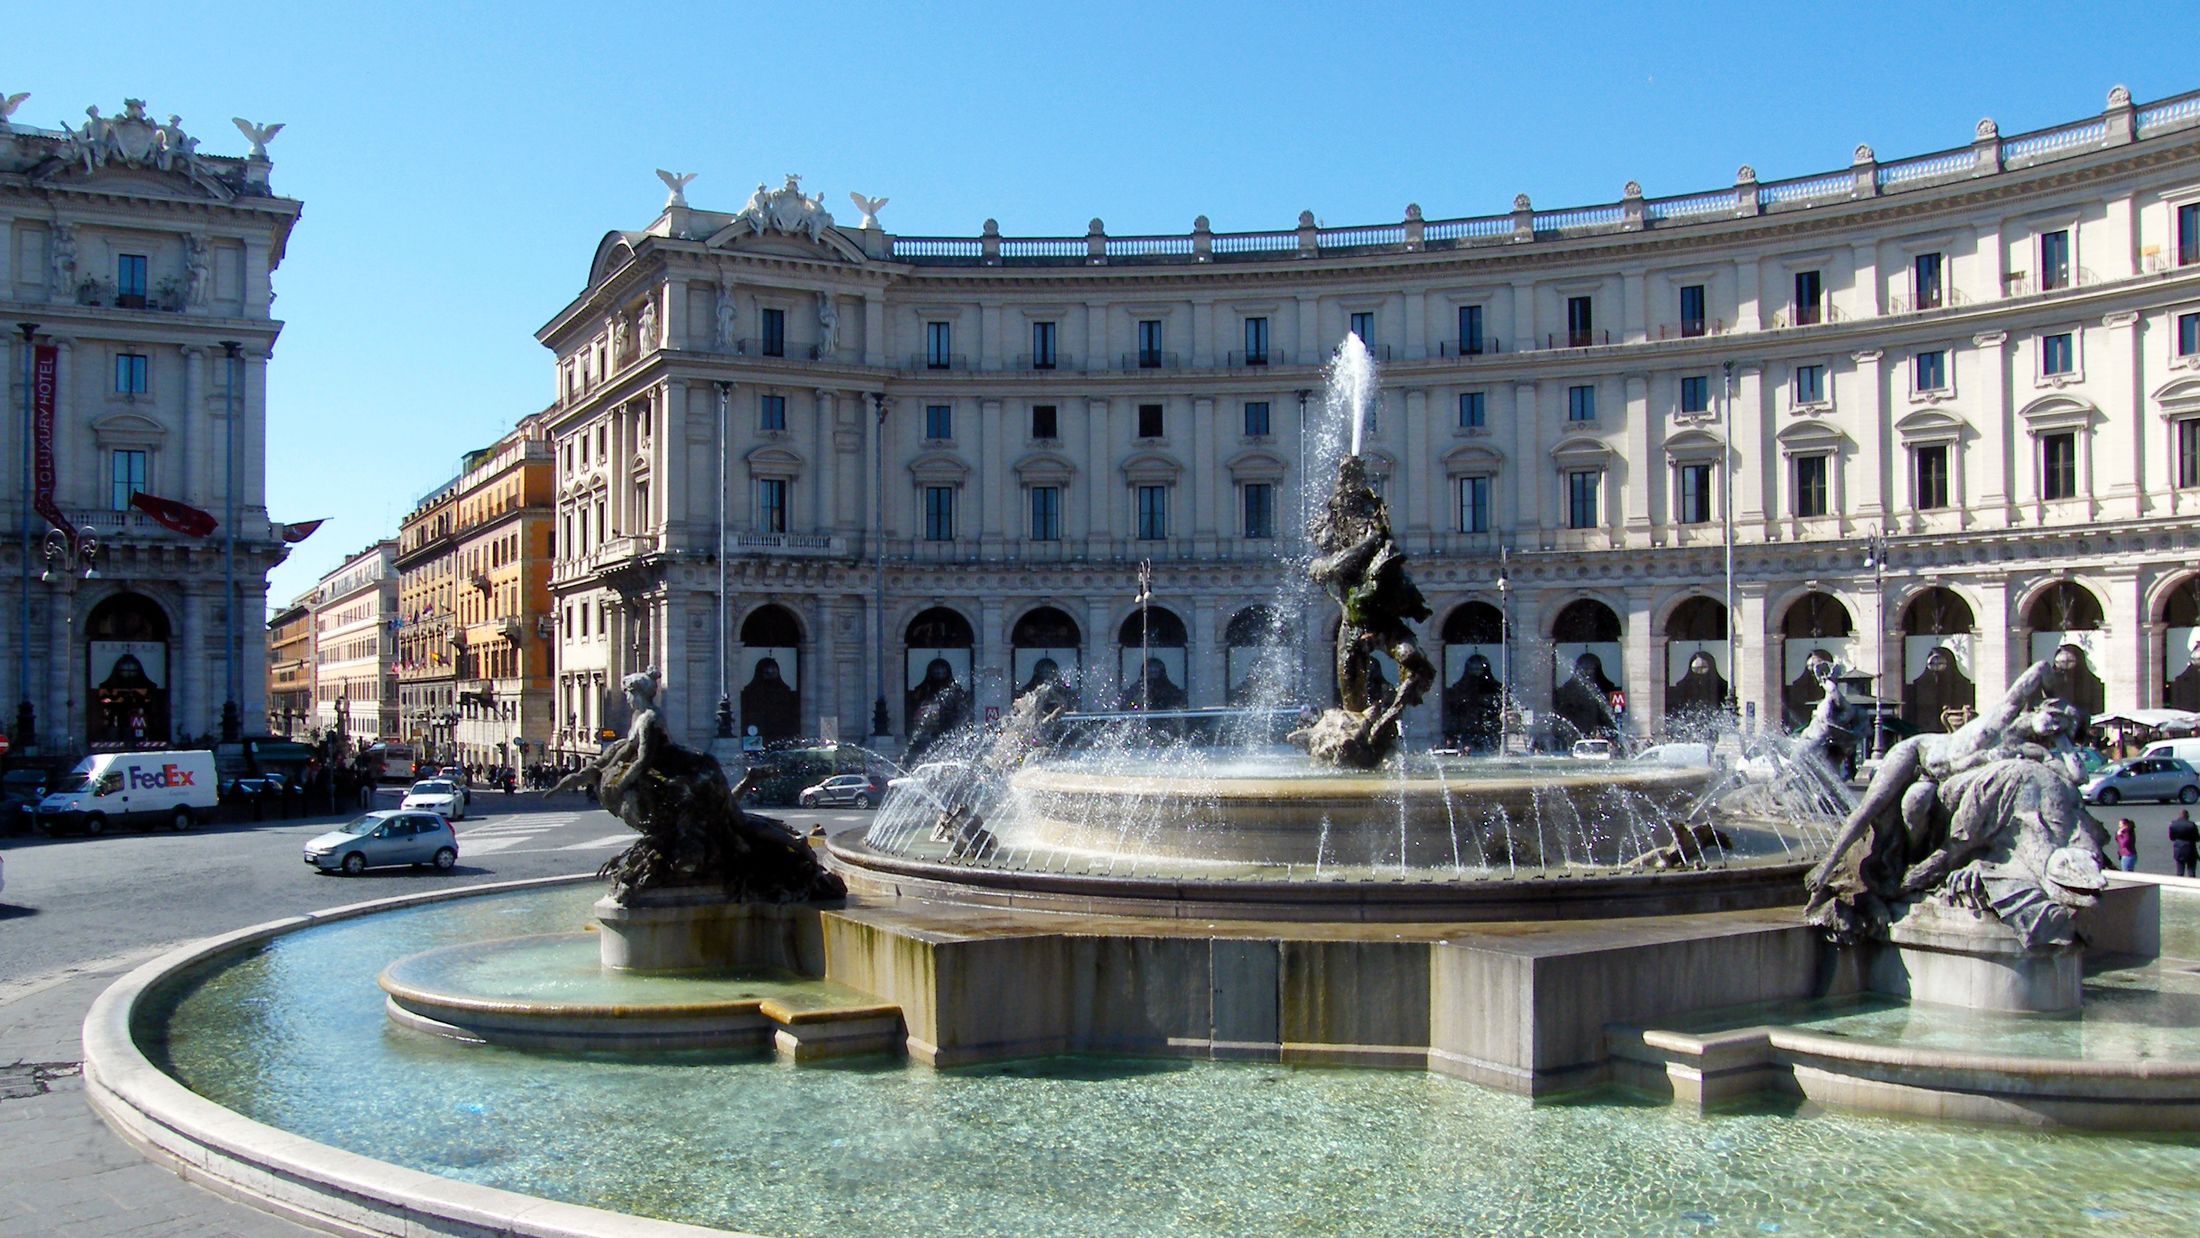 000940_Piazza della Repubblica fountain_Rome_Italy_Mick Barnard_002-Hybris